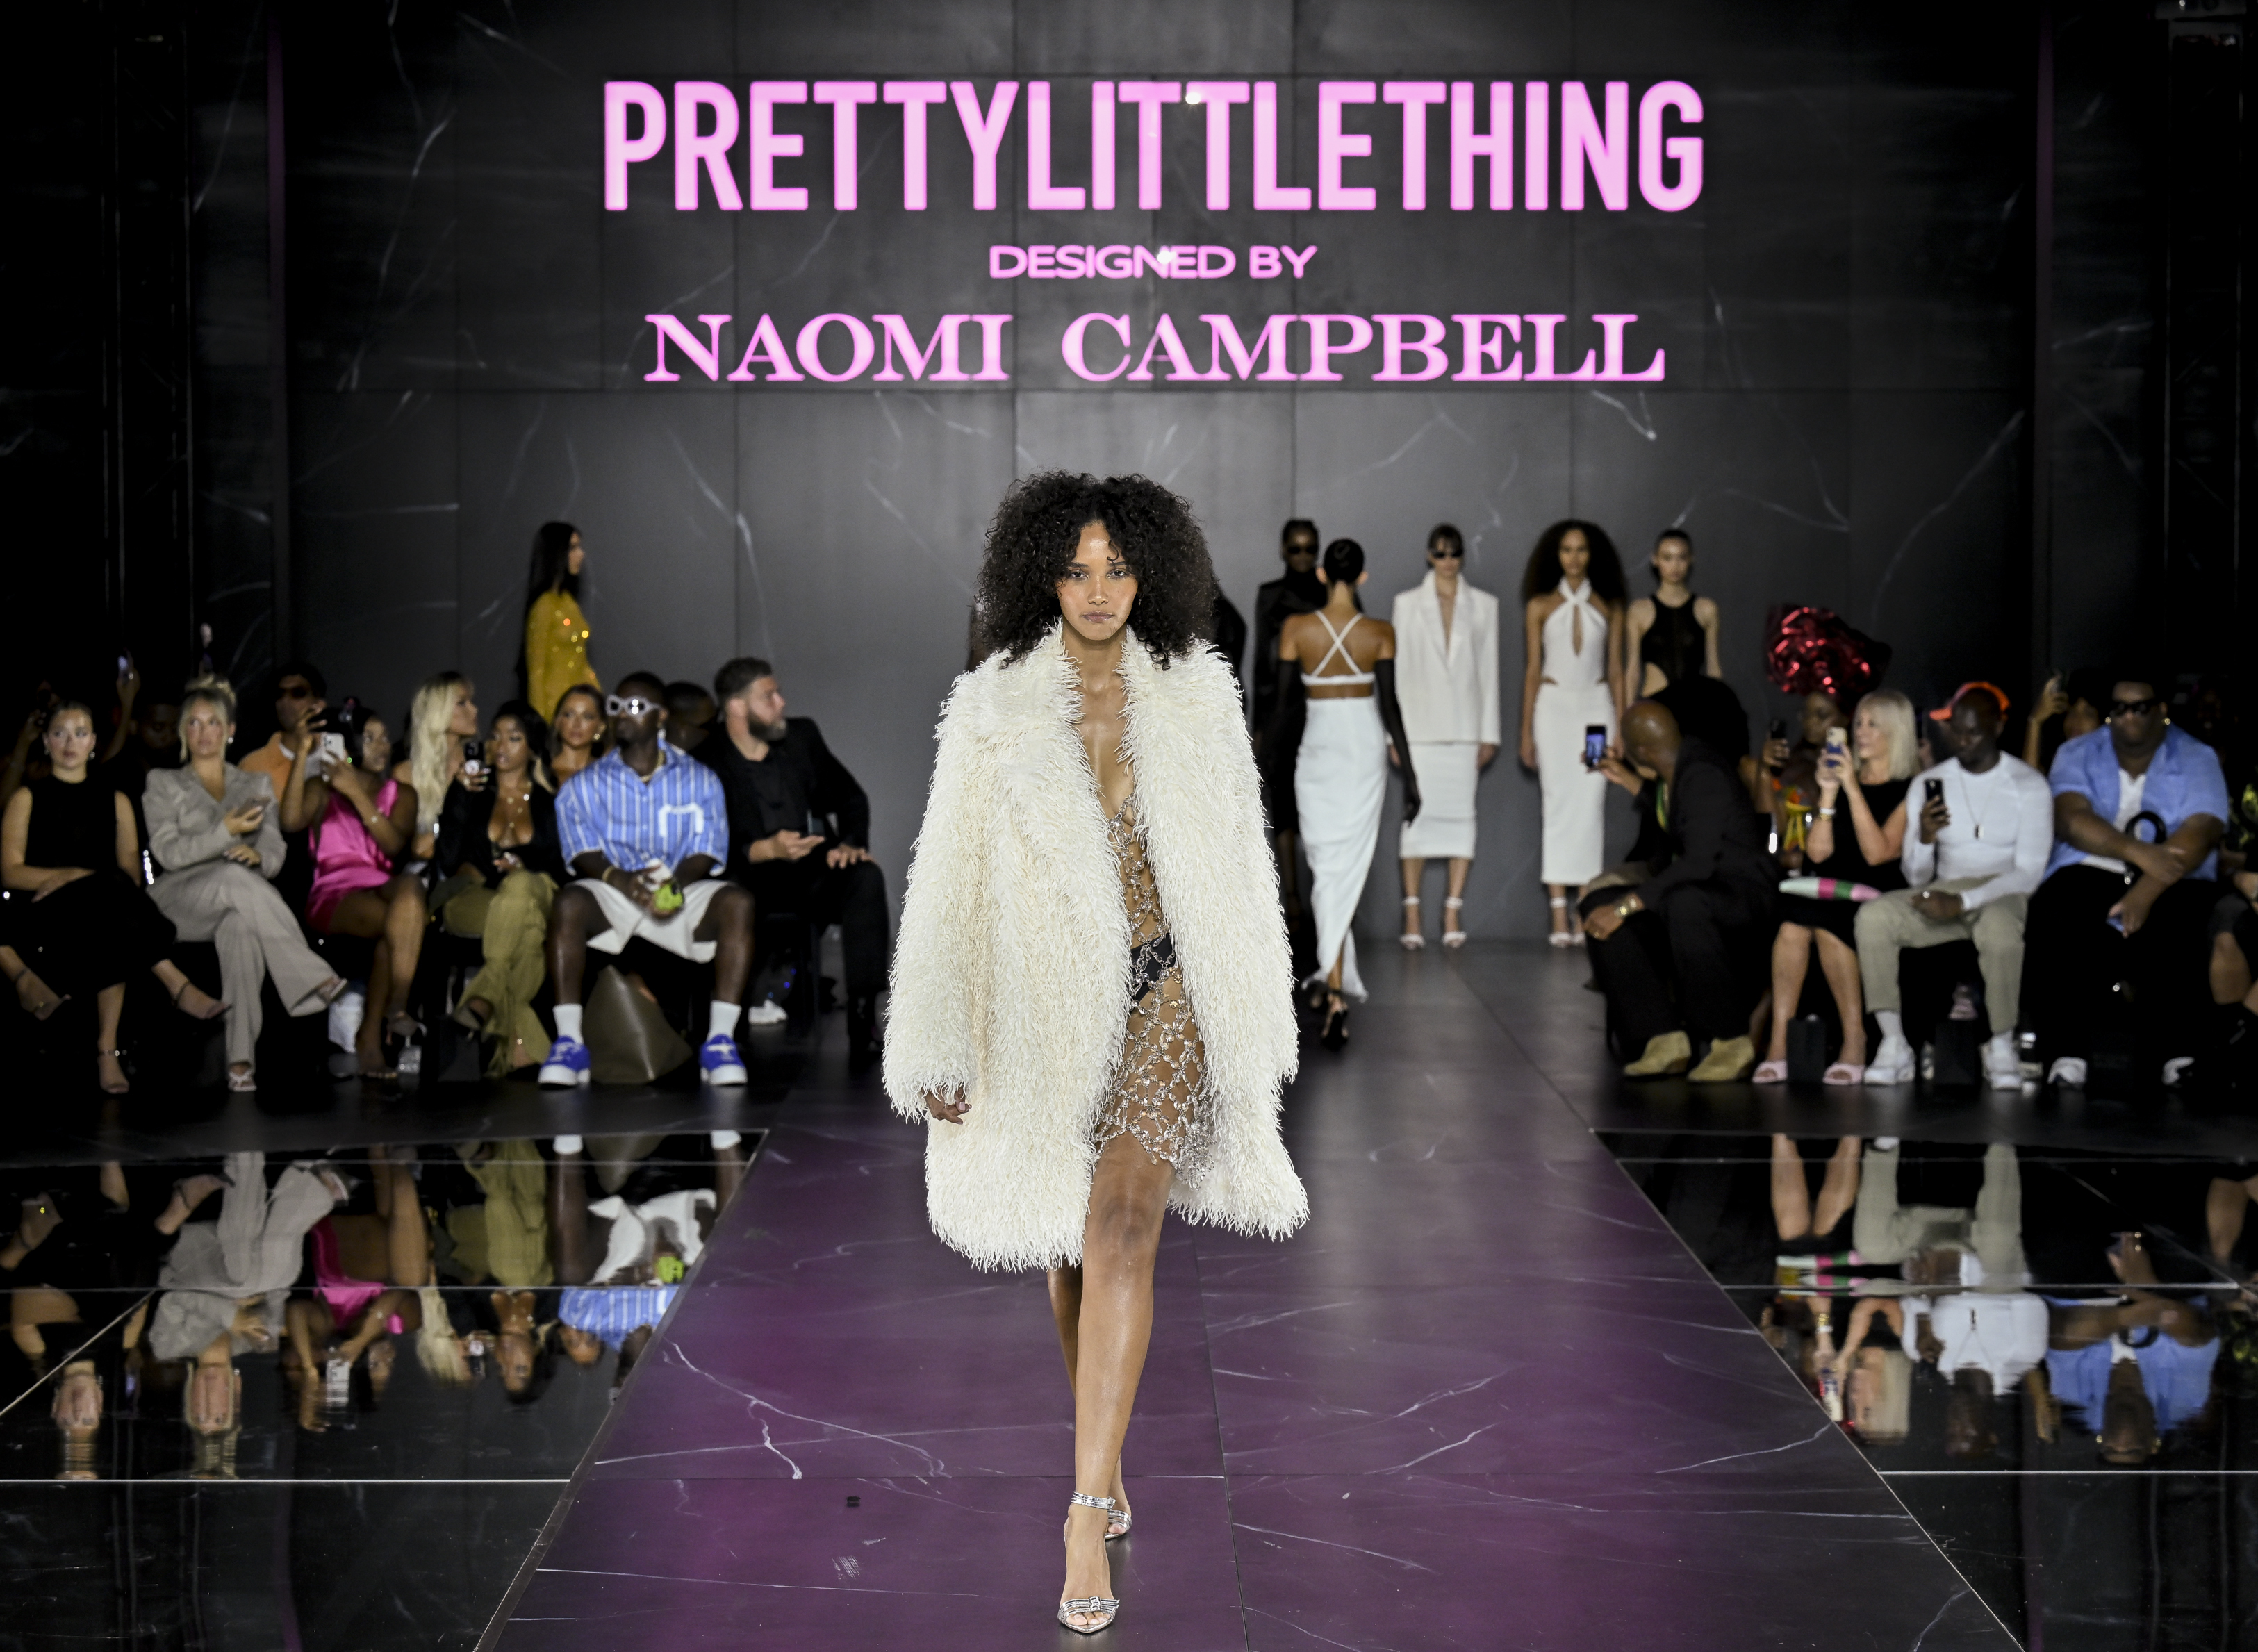 Naomi Campbell models her designs at New York Fashion Week - Los